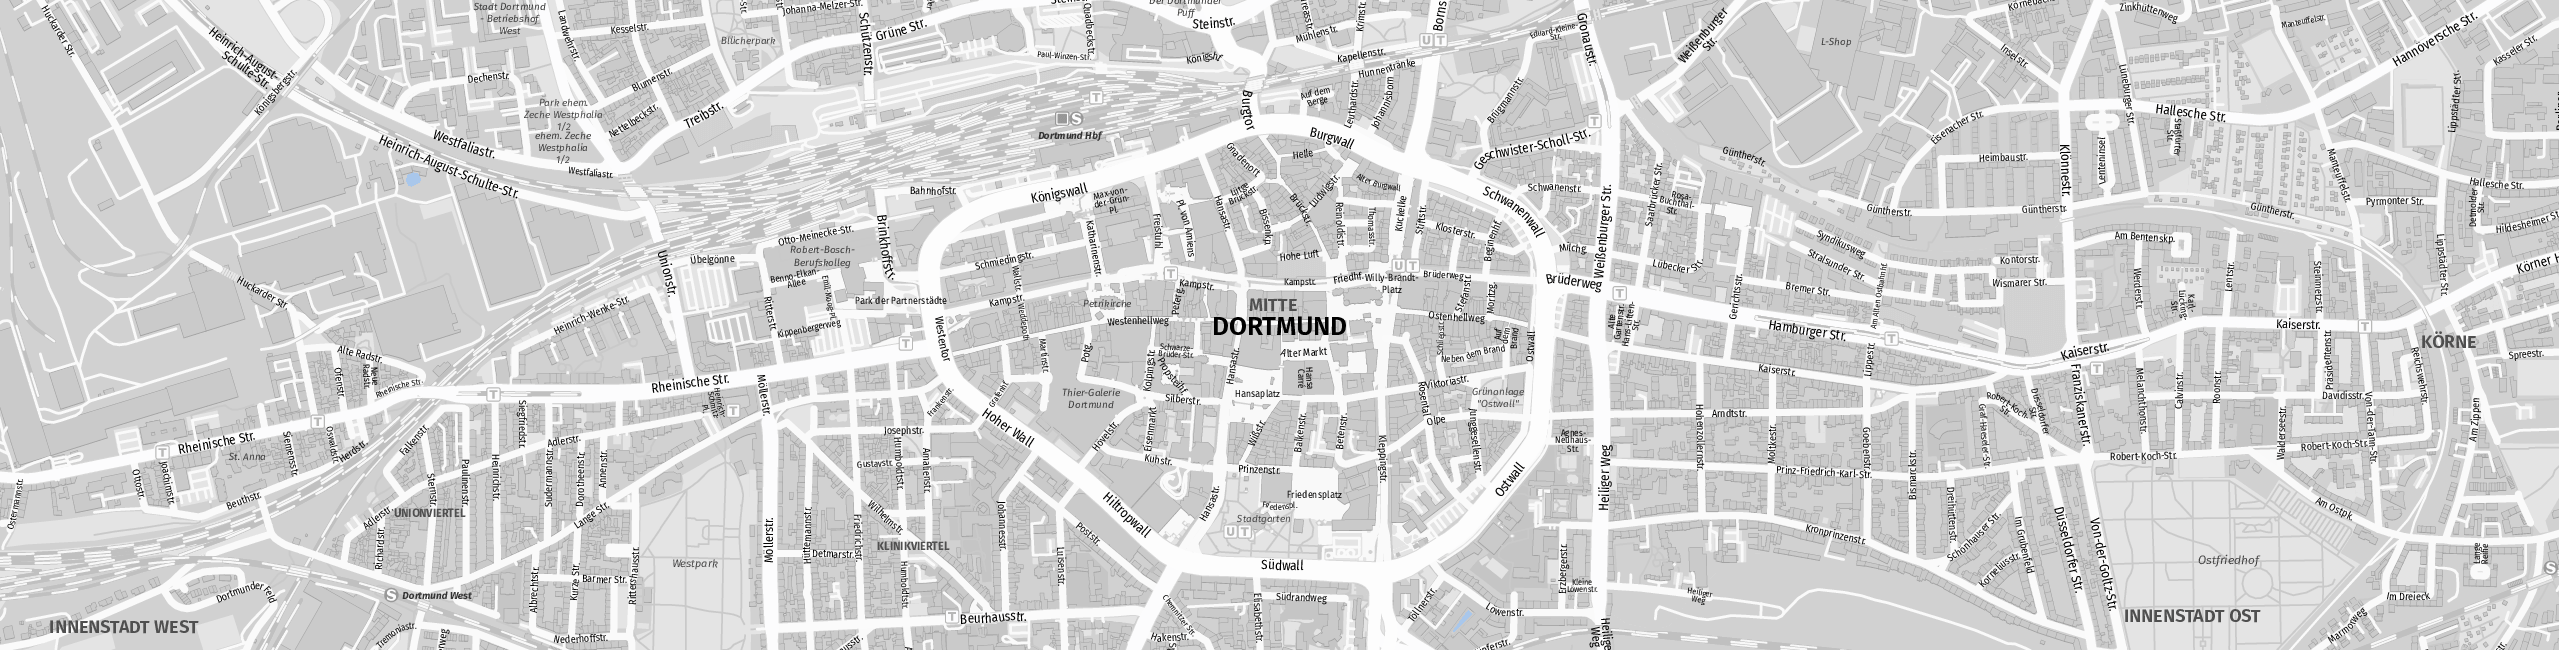 Stadtplan Dortmund zum Downloaden.